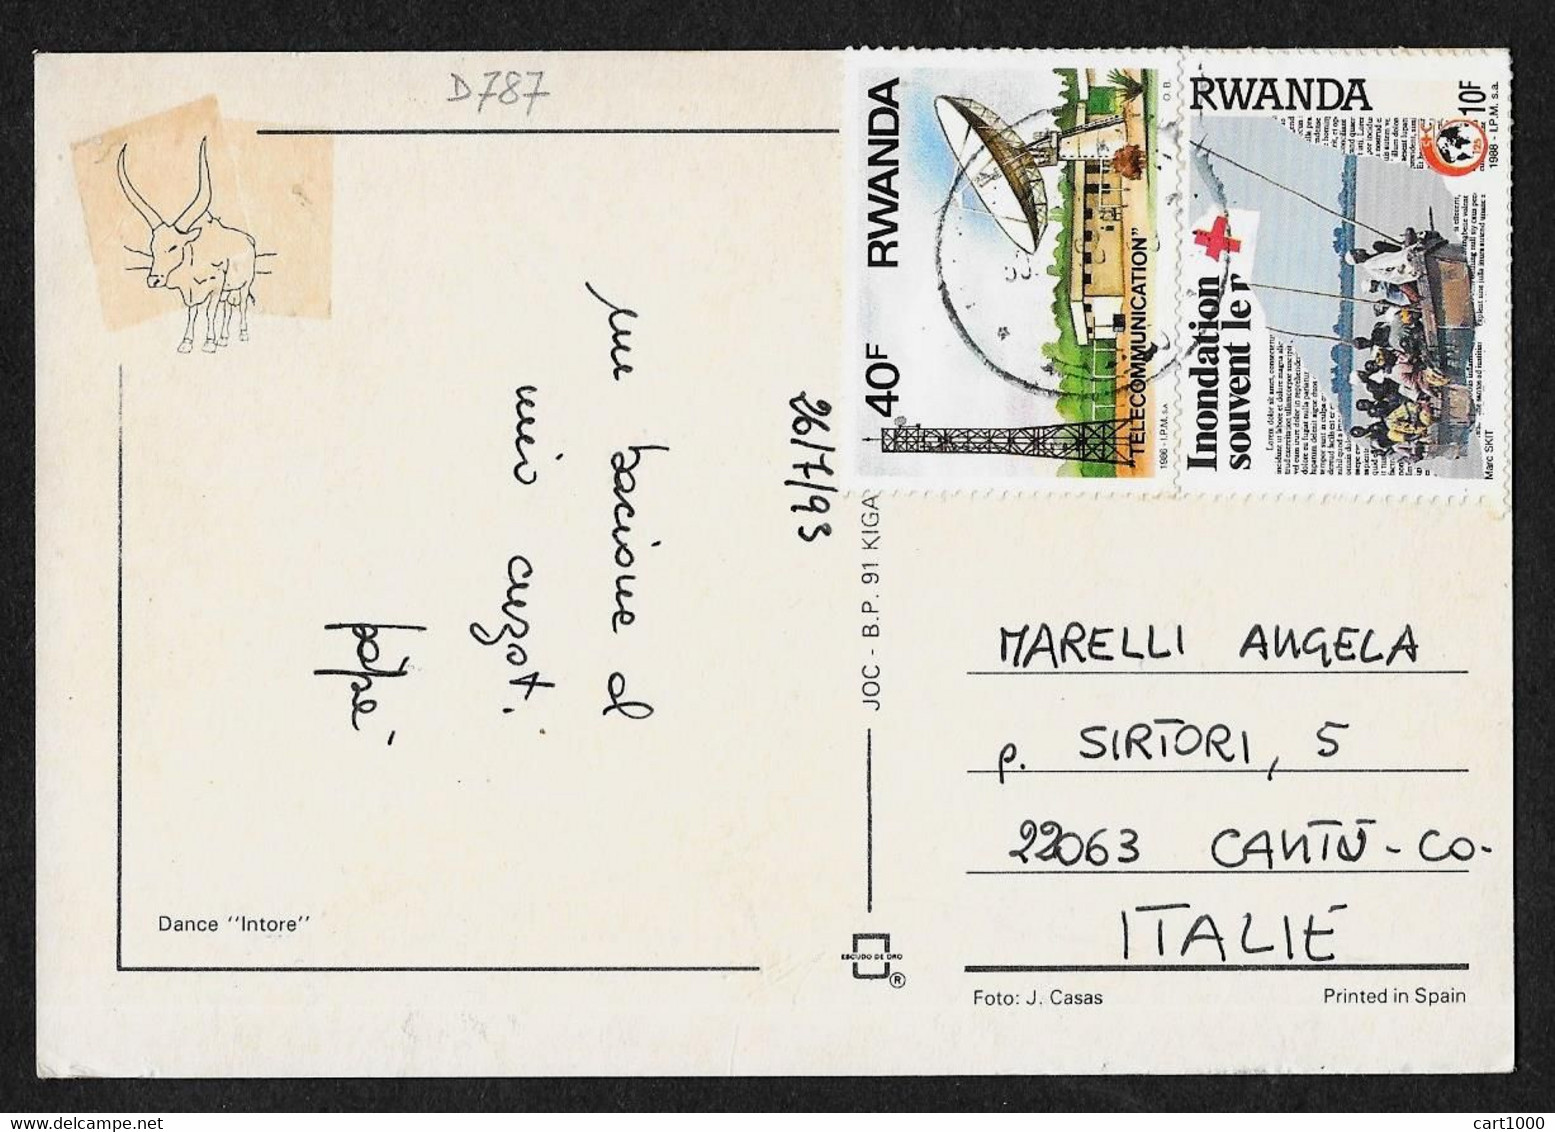 RWANDA 1993 DANCE INTORE N°D787 - Ruanda